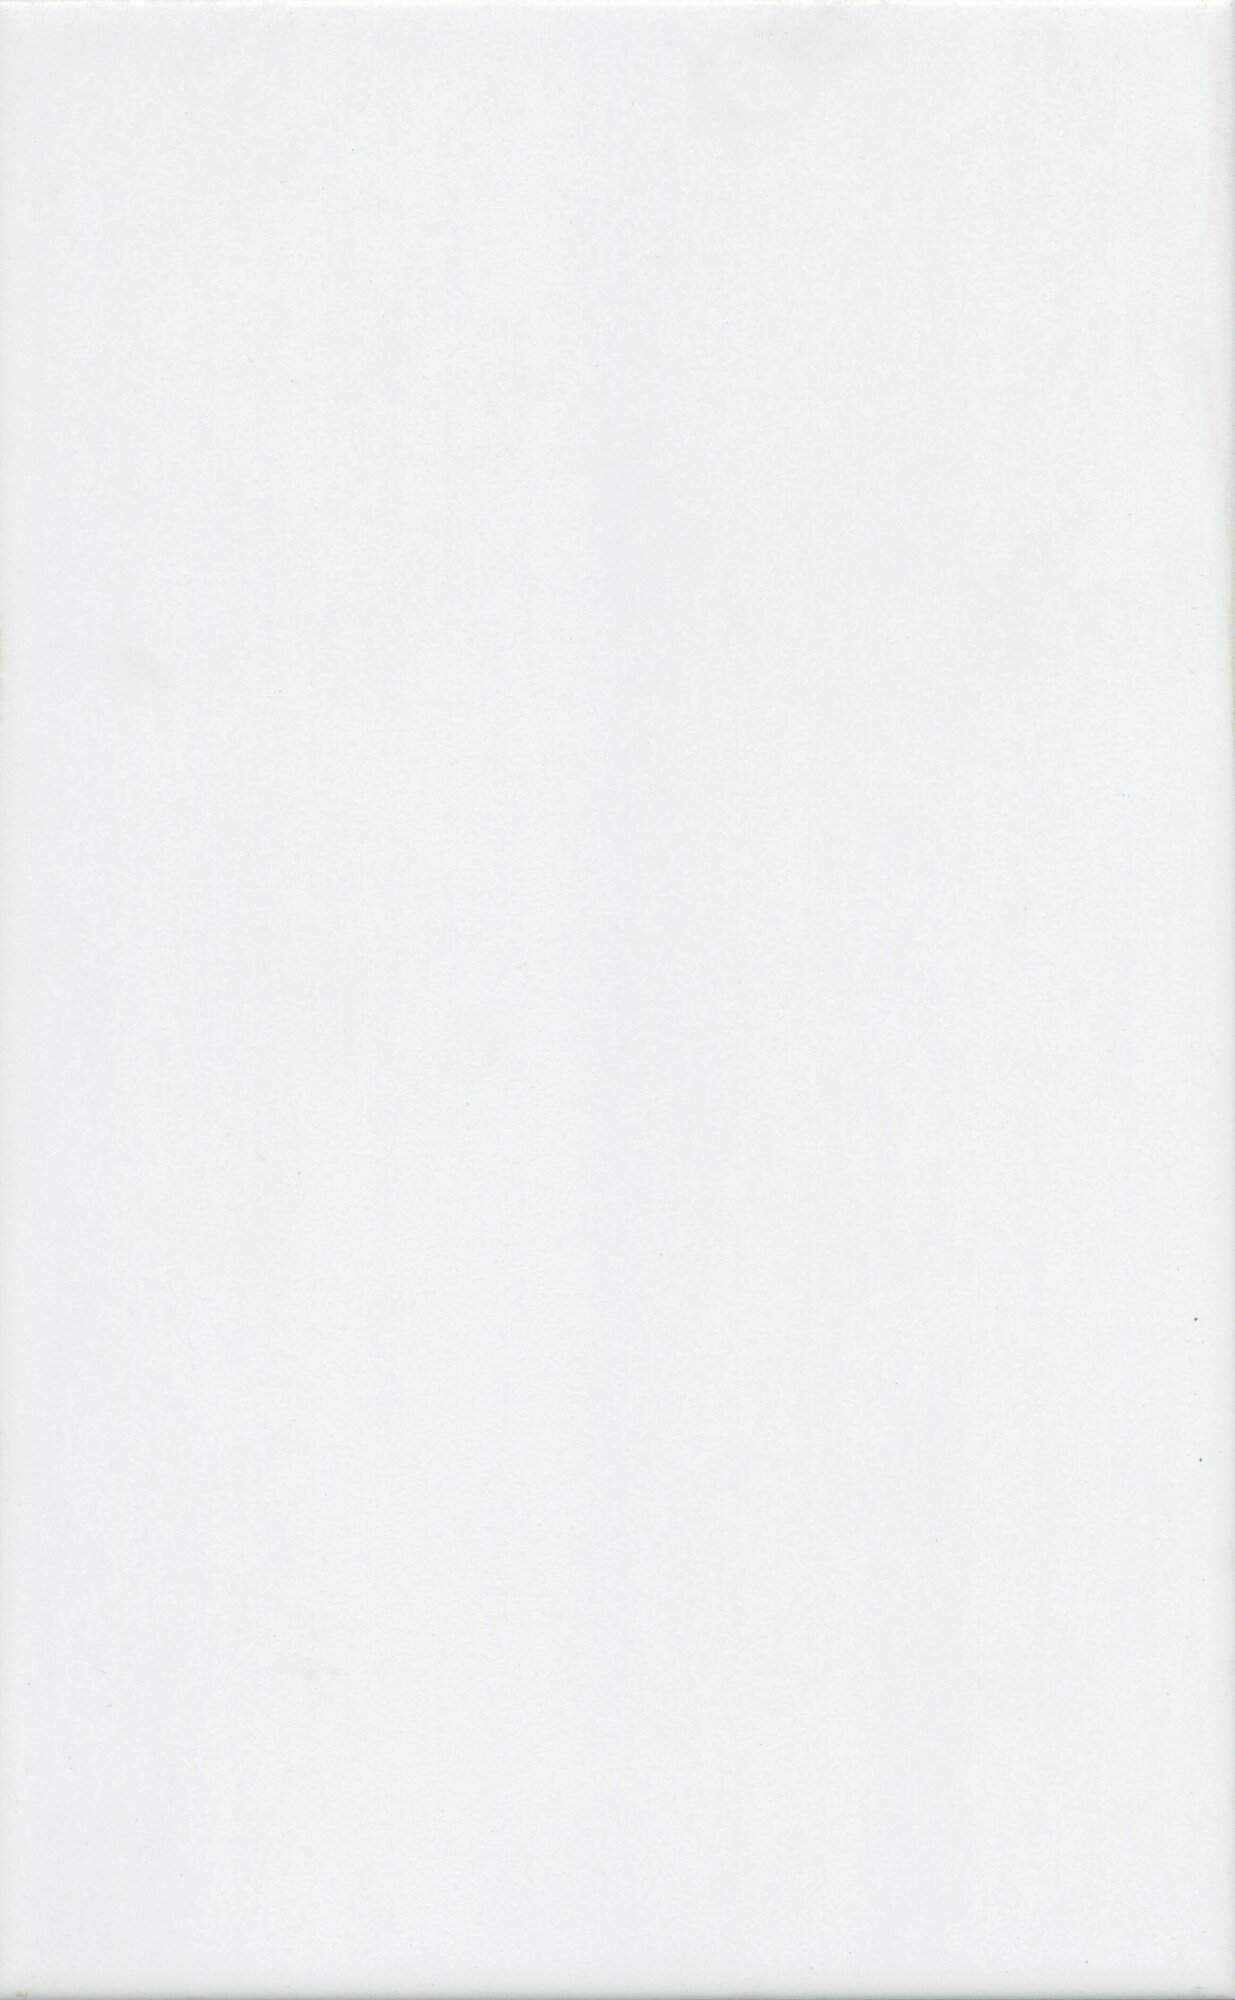 Керамическая плитка настенная Kerama marazzi Ломбардиа белый 25х40 см, уп. 1,1 м2, 11 плиток 25х40 см.